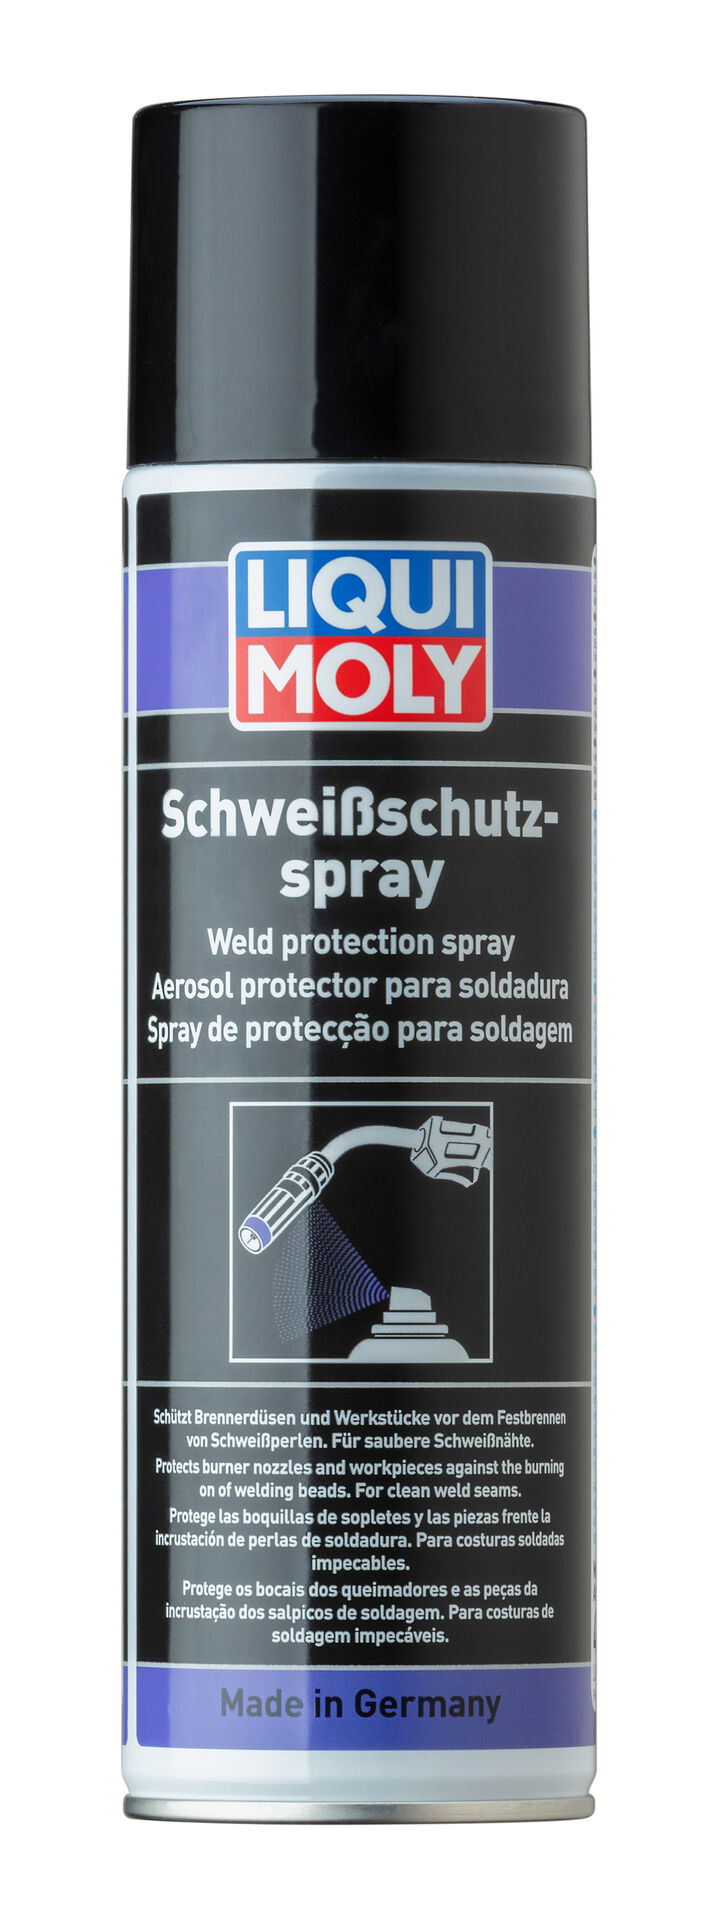 Liqui Moly Schweiß Schutz Spray Sprühdose silikonfrei 500 ml